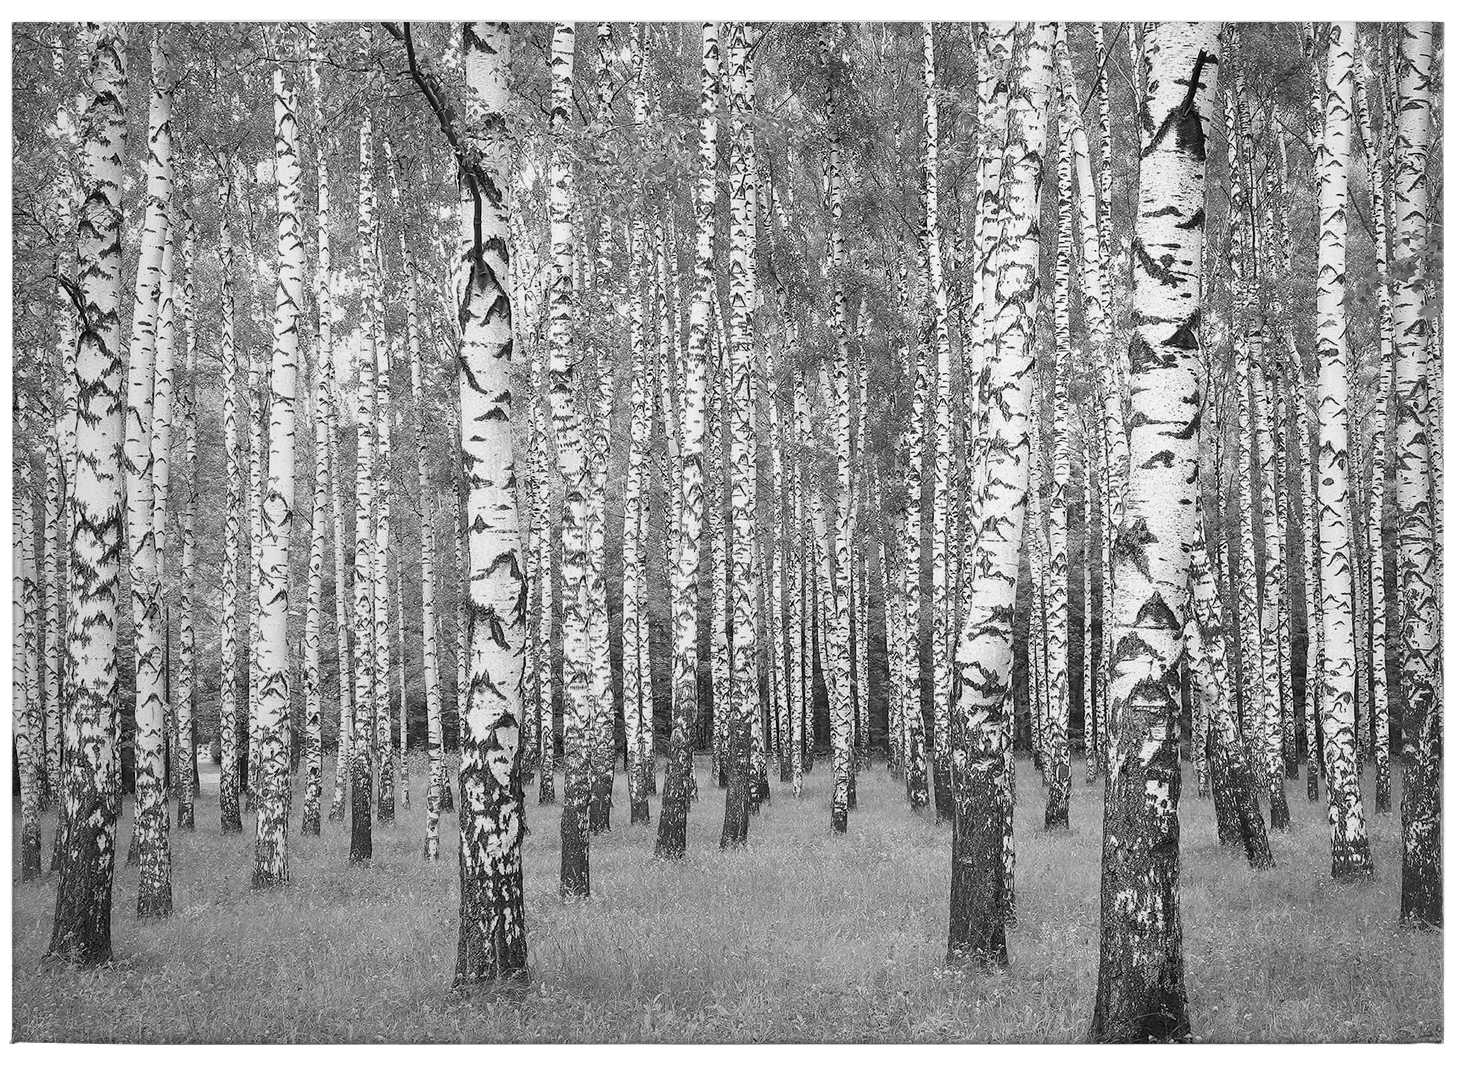             Forêt de bouleaux toile noir et blanc - 0,70 m x 0,50 m
        